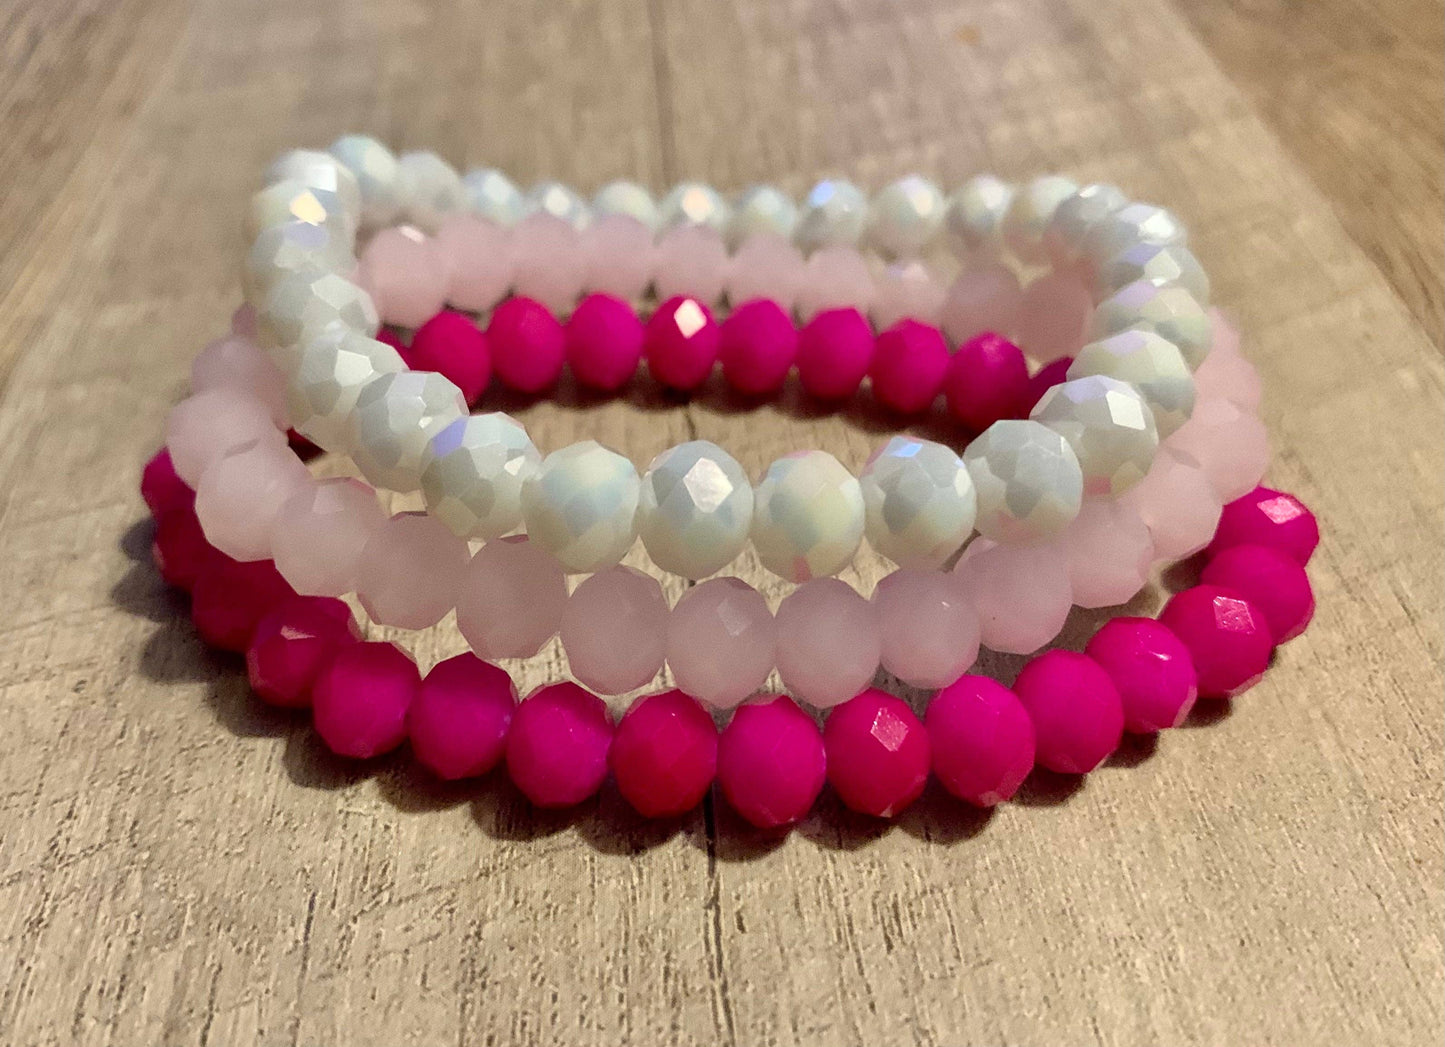 3pc Bracelet Set- “Pretty in Pink”